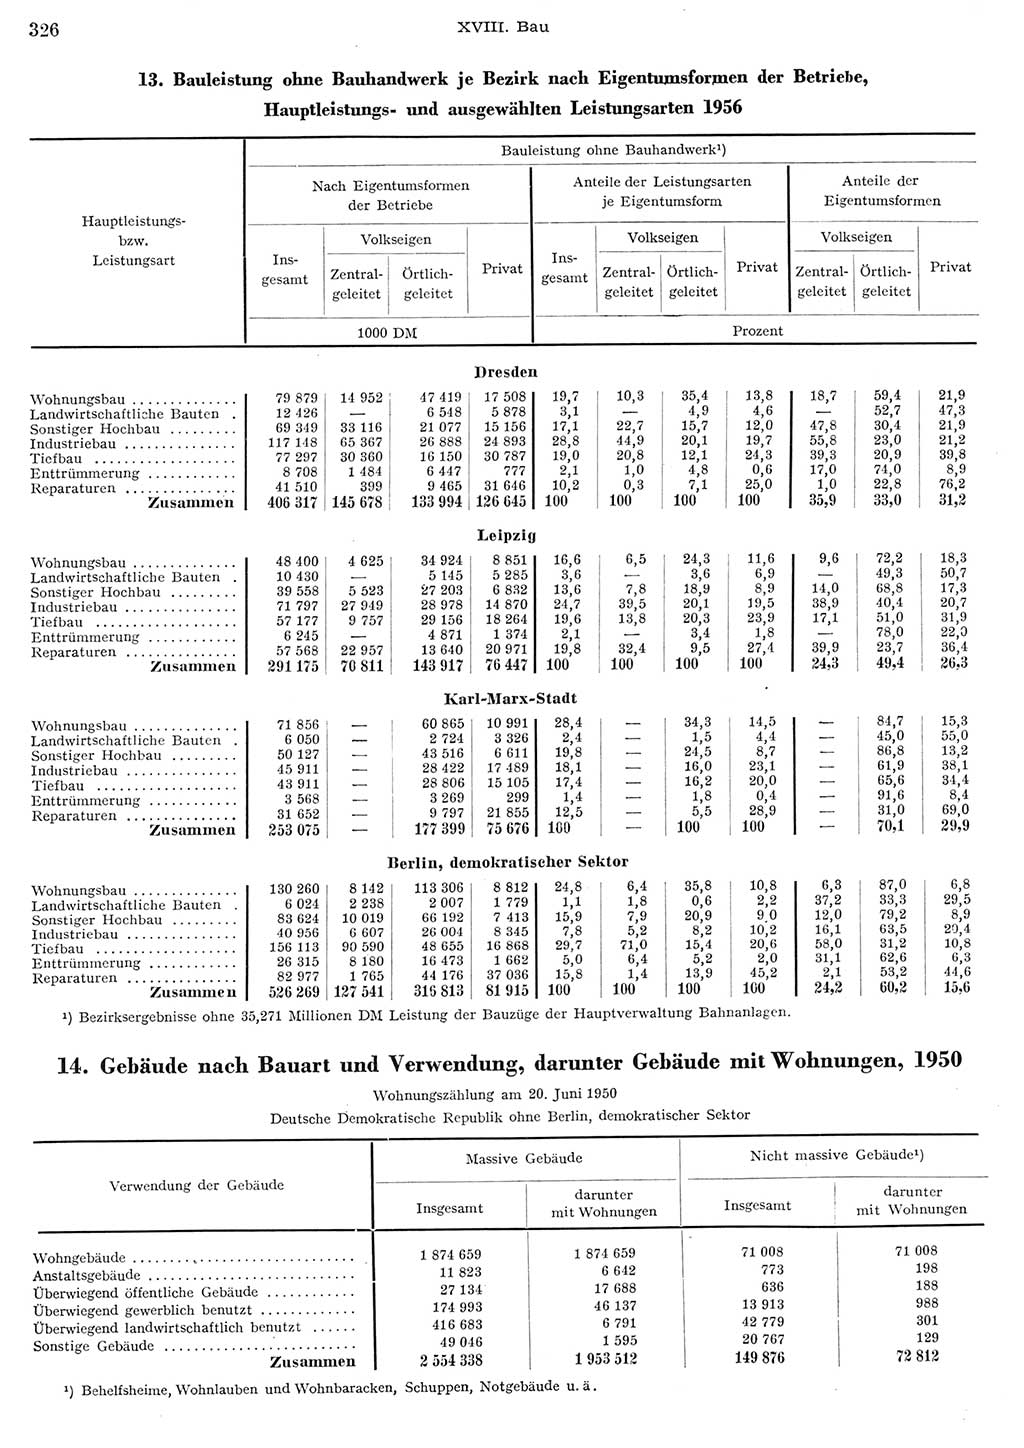 Statistisches Jahrbuch der Deutschen Demokratischen Republik (DDR) 1956, Seite 326 (Stat. Jb. DDR 1956, S. 326)